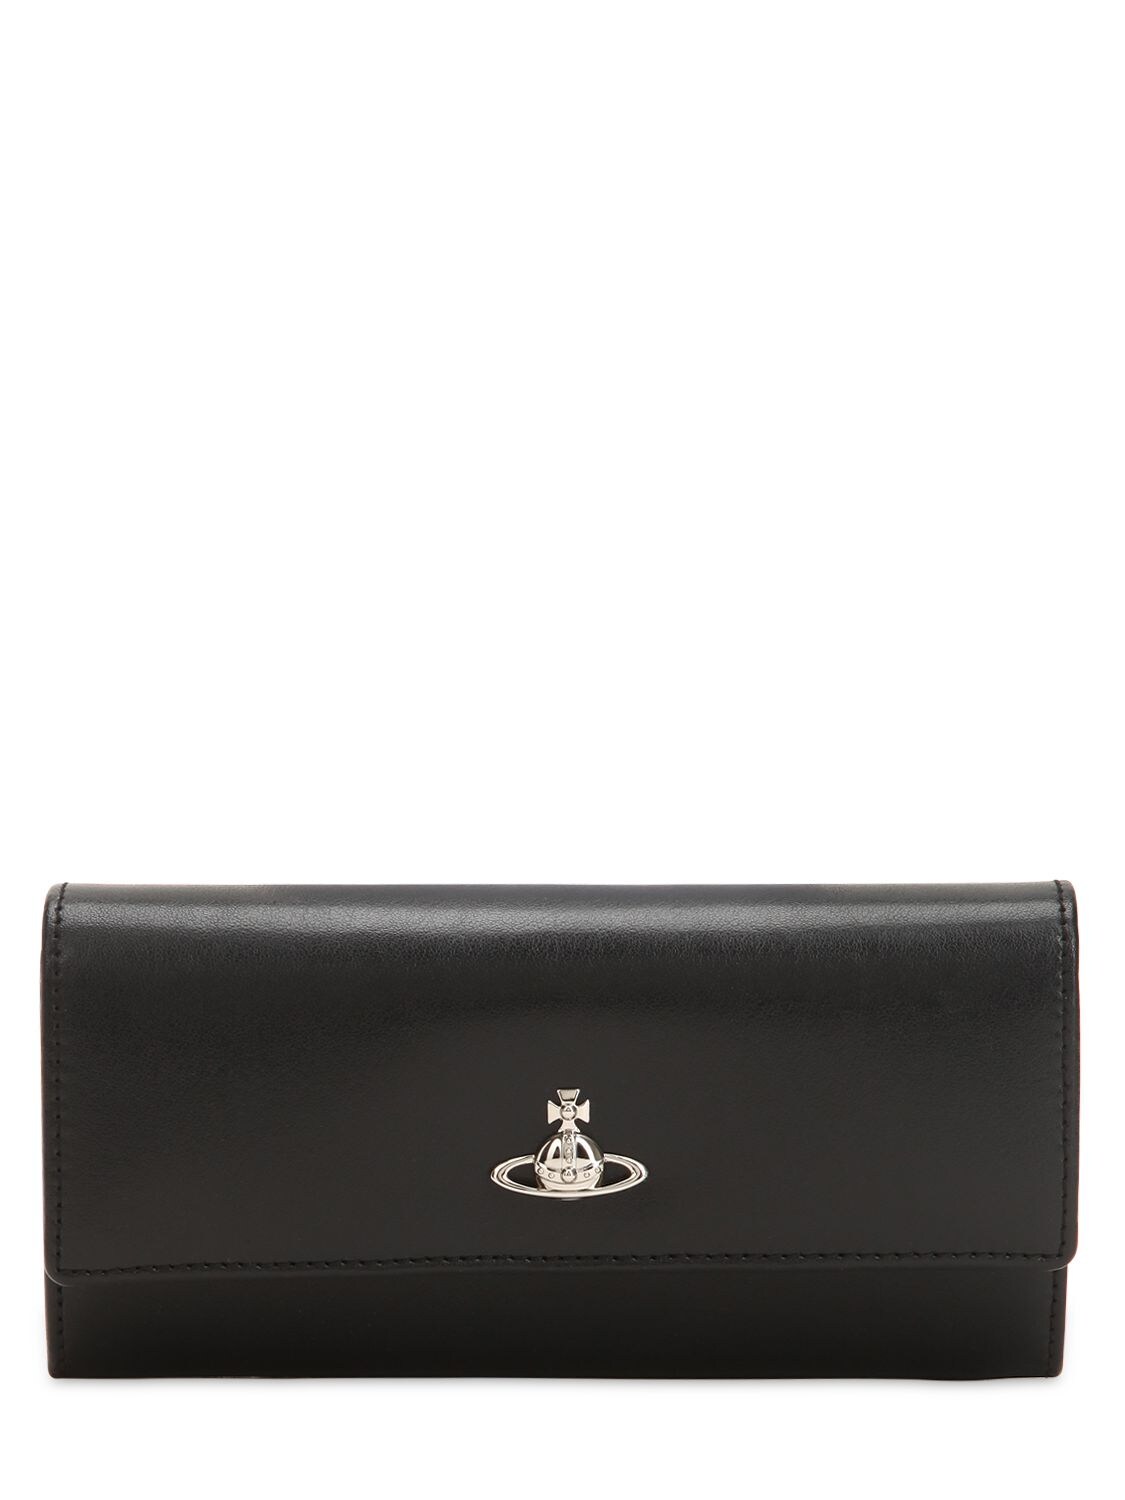 Vivienne Westwood Matilda Long Wallet In Black